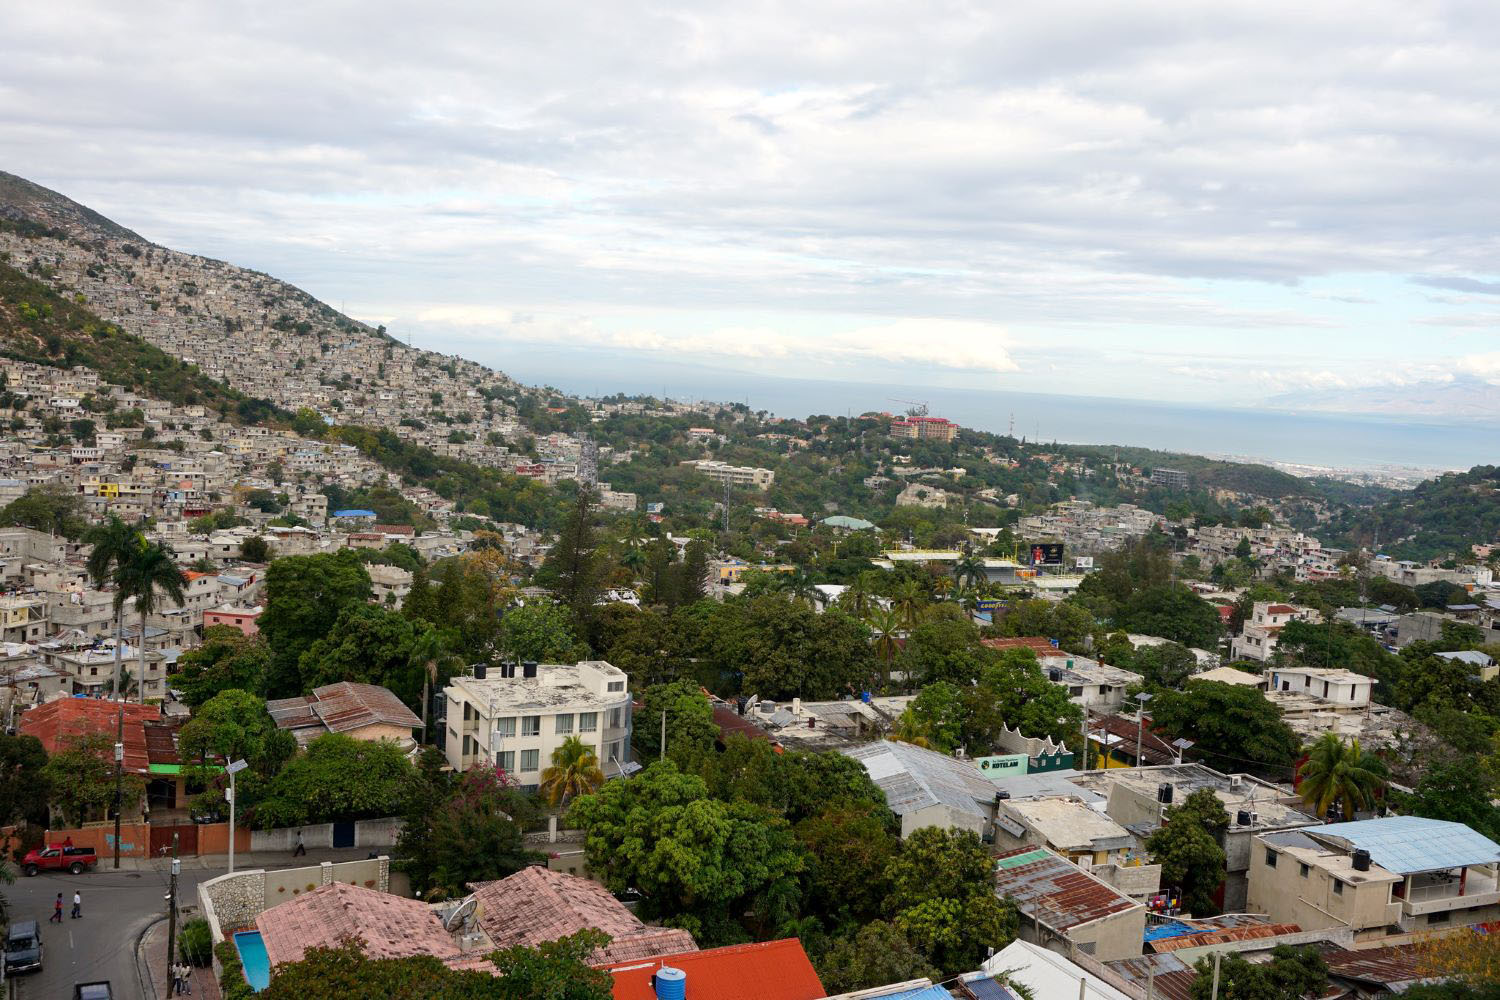 View of Haiti